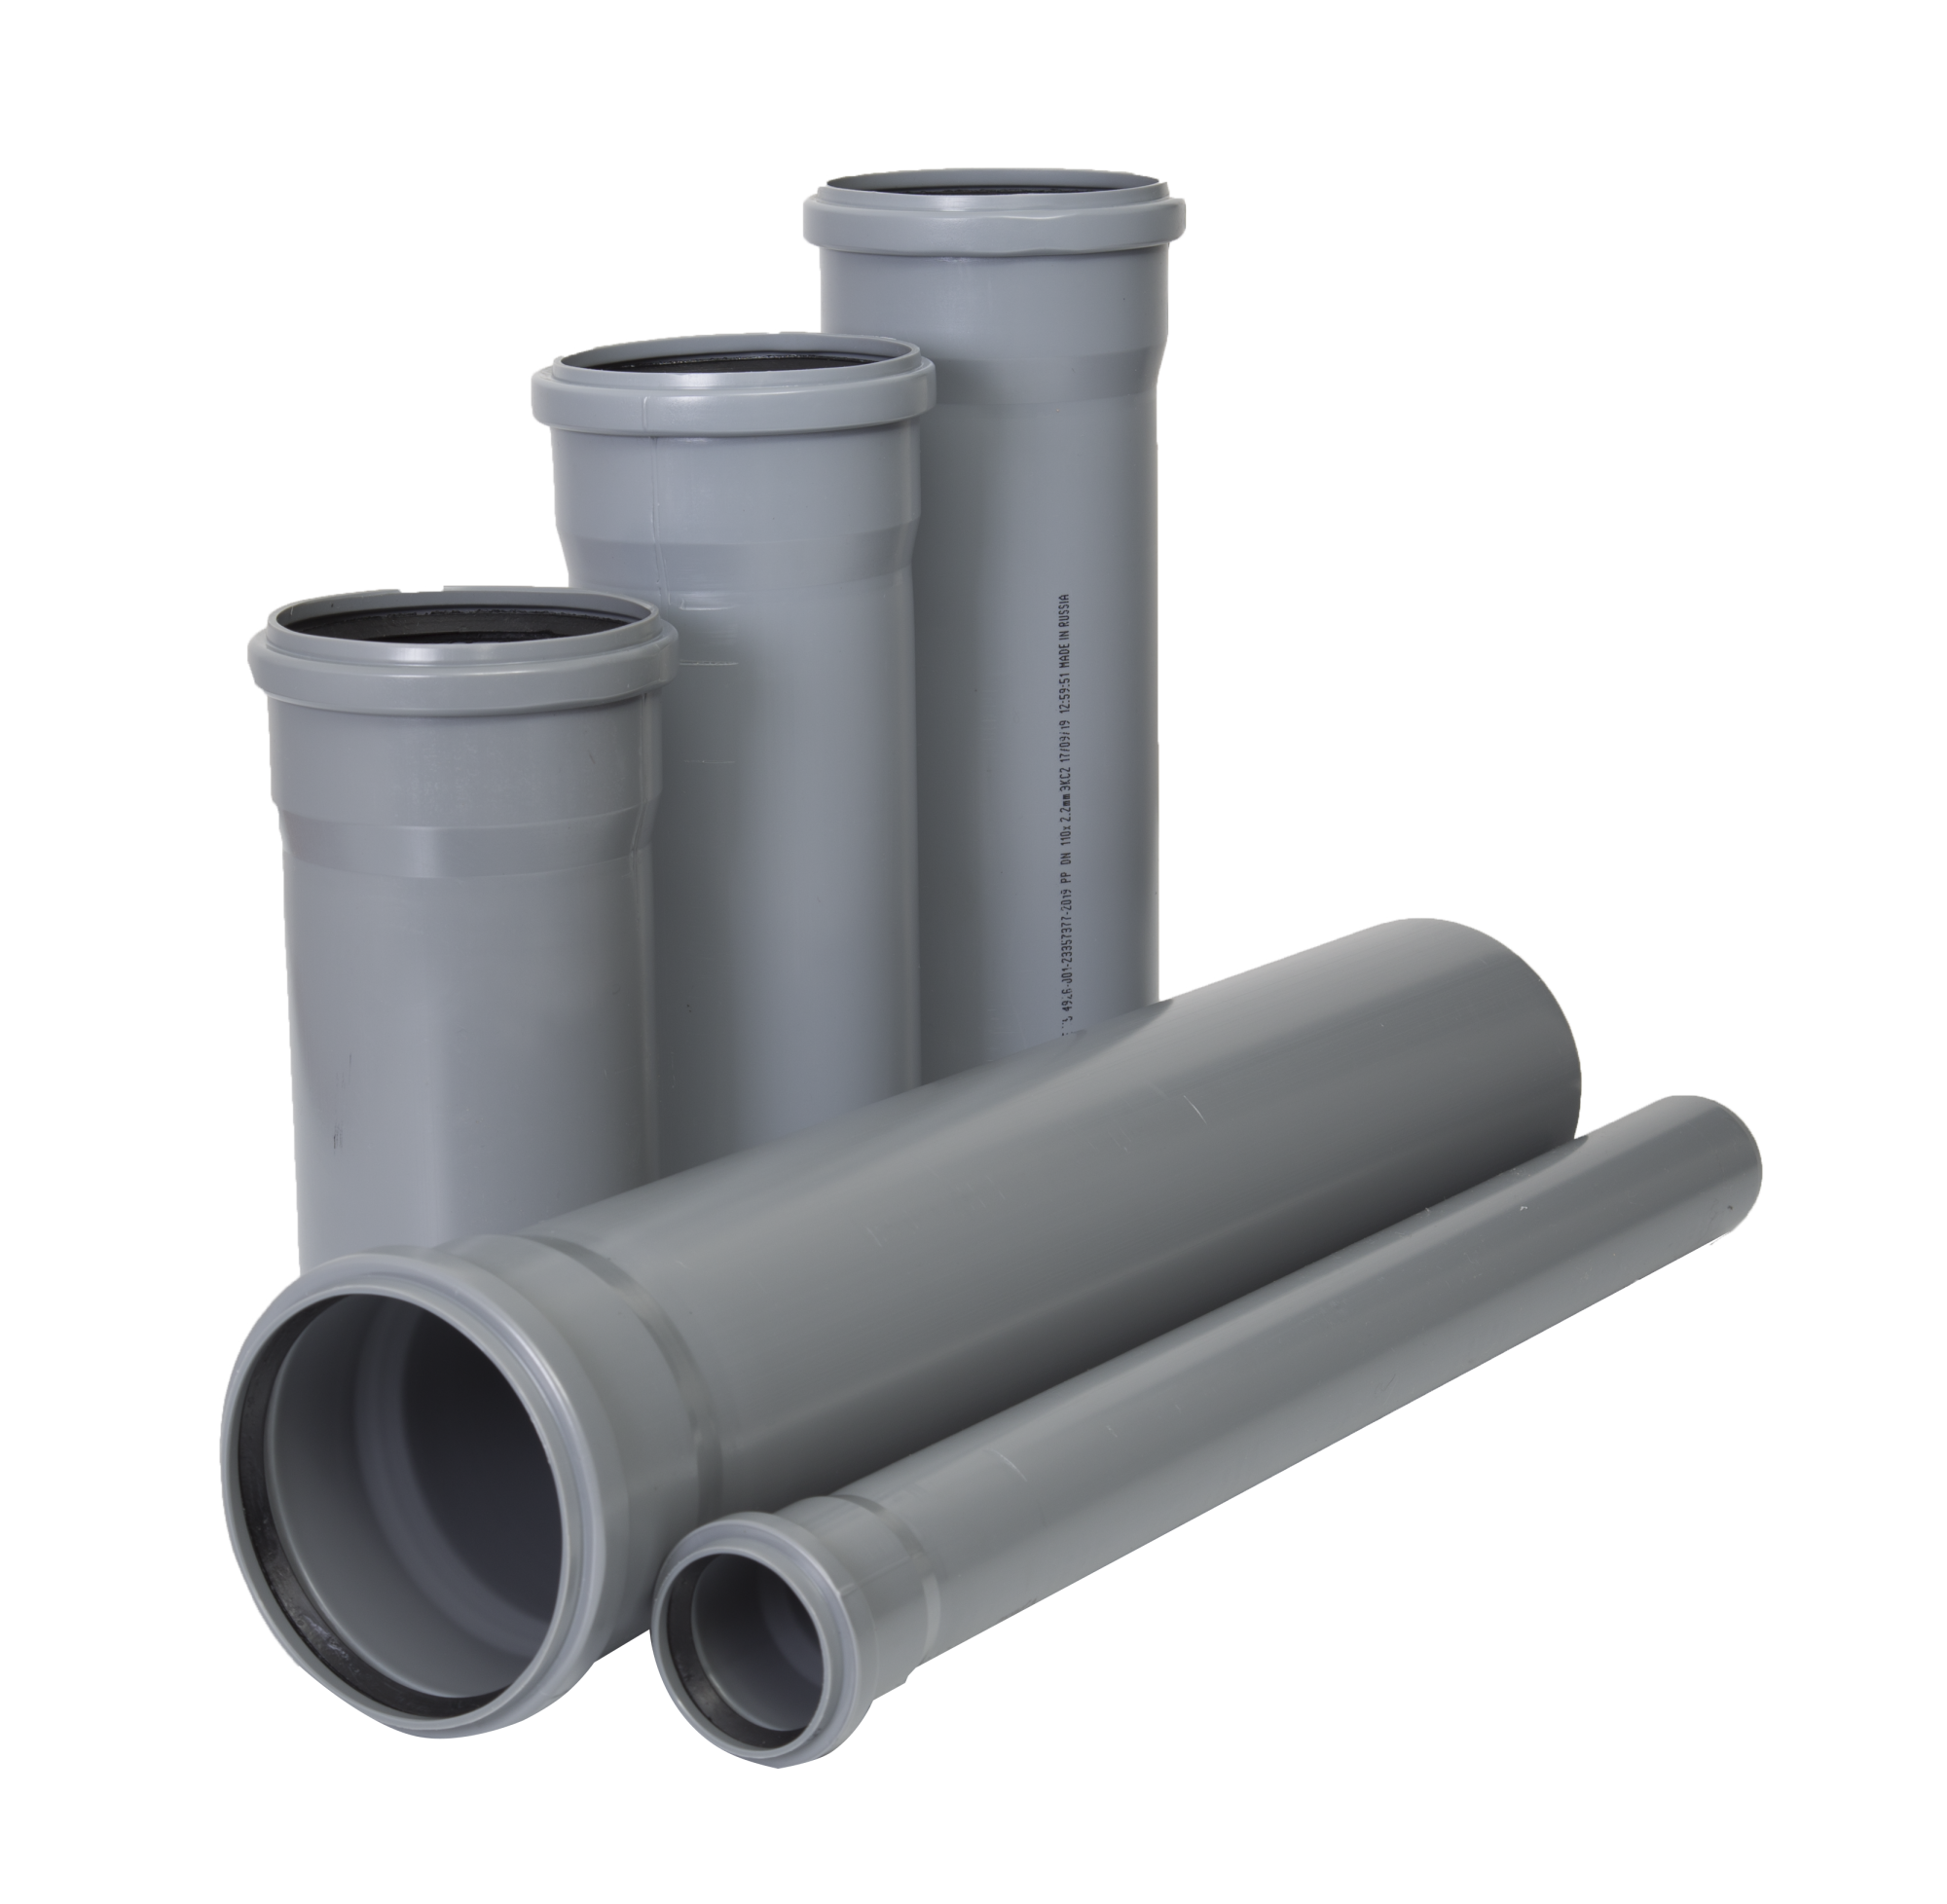 Полиэтиленовые трубы для канализации: технические характеристики, маркировка, материалы